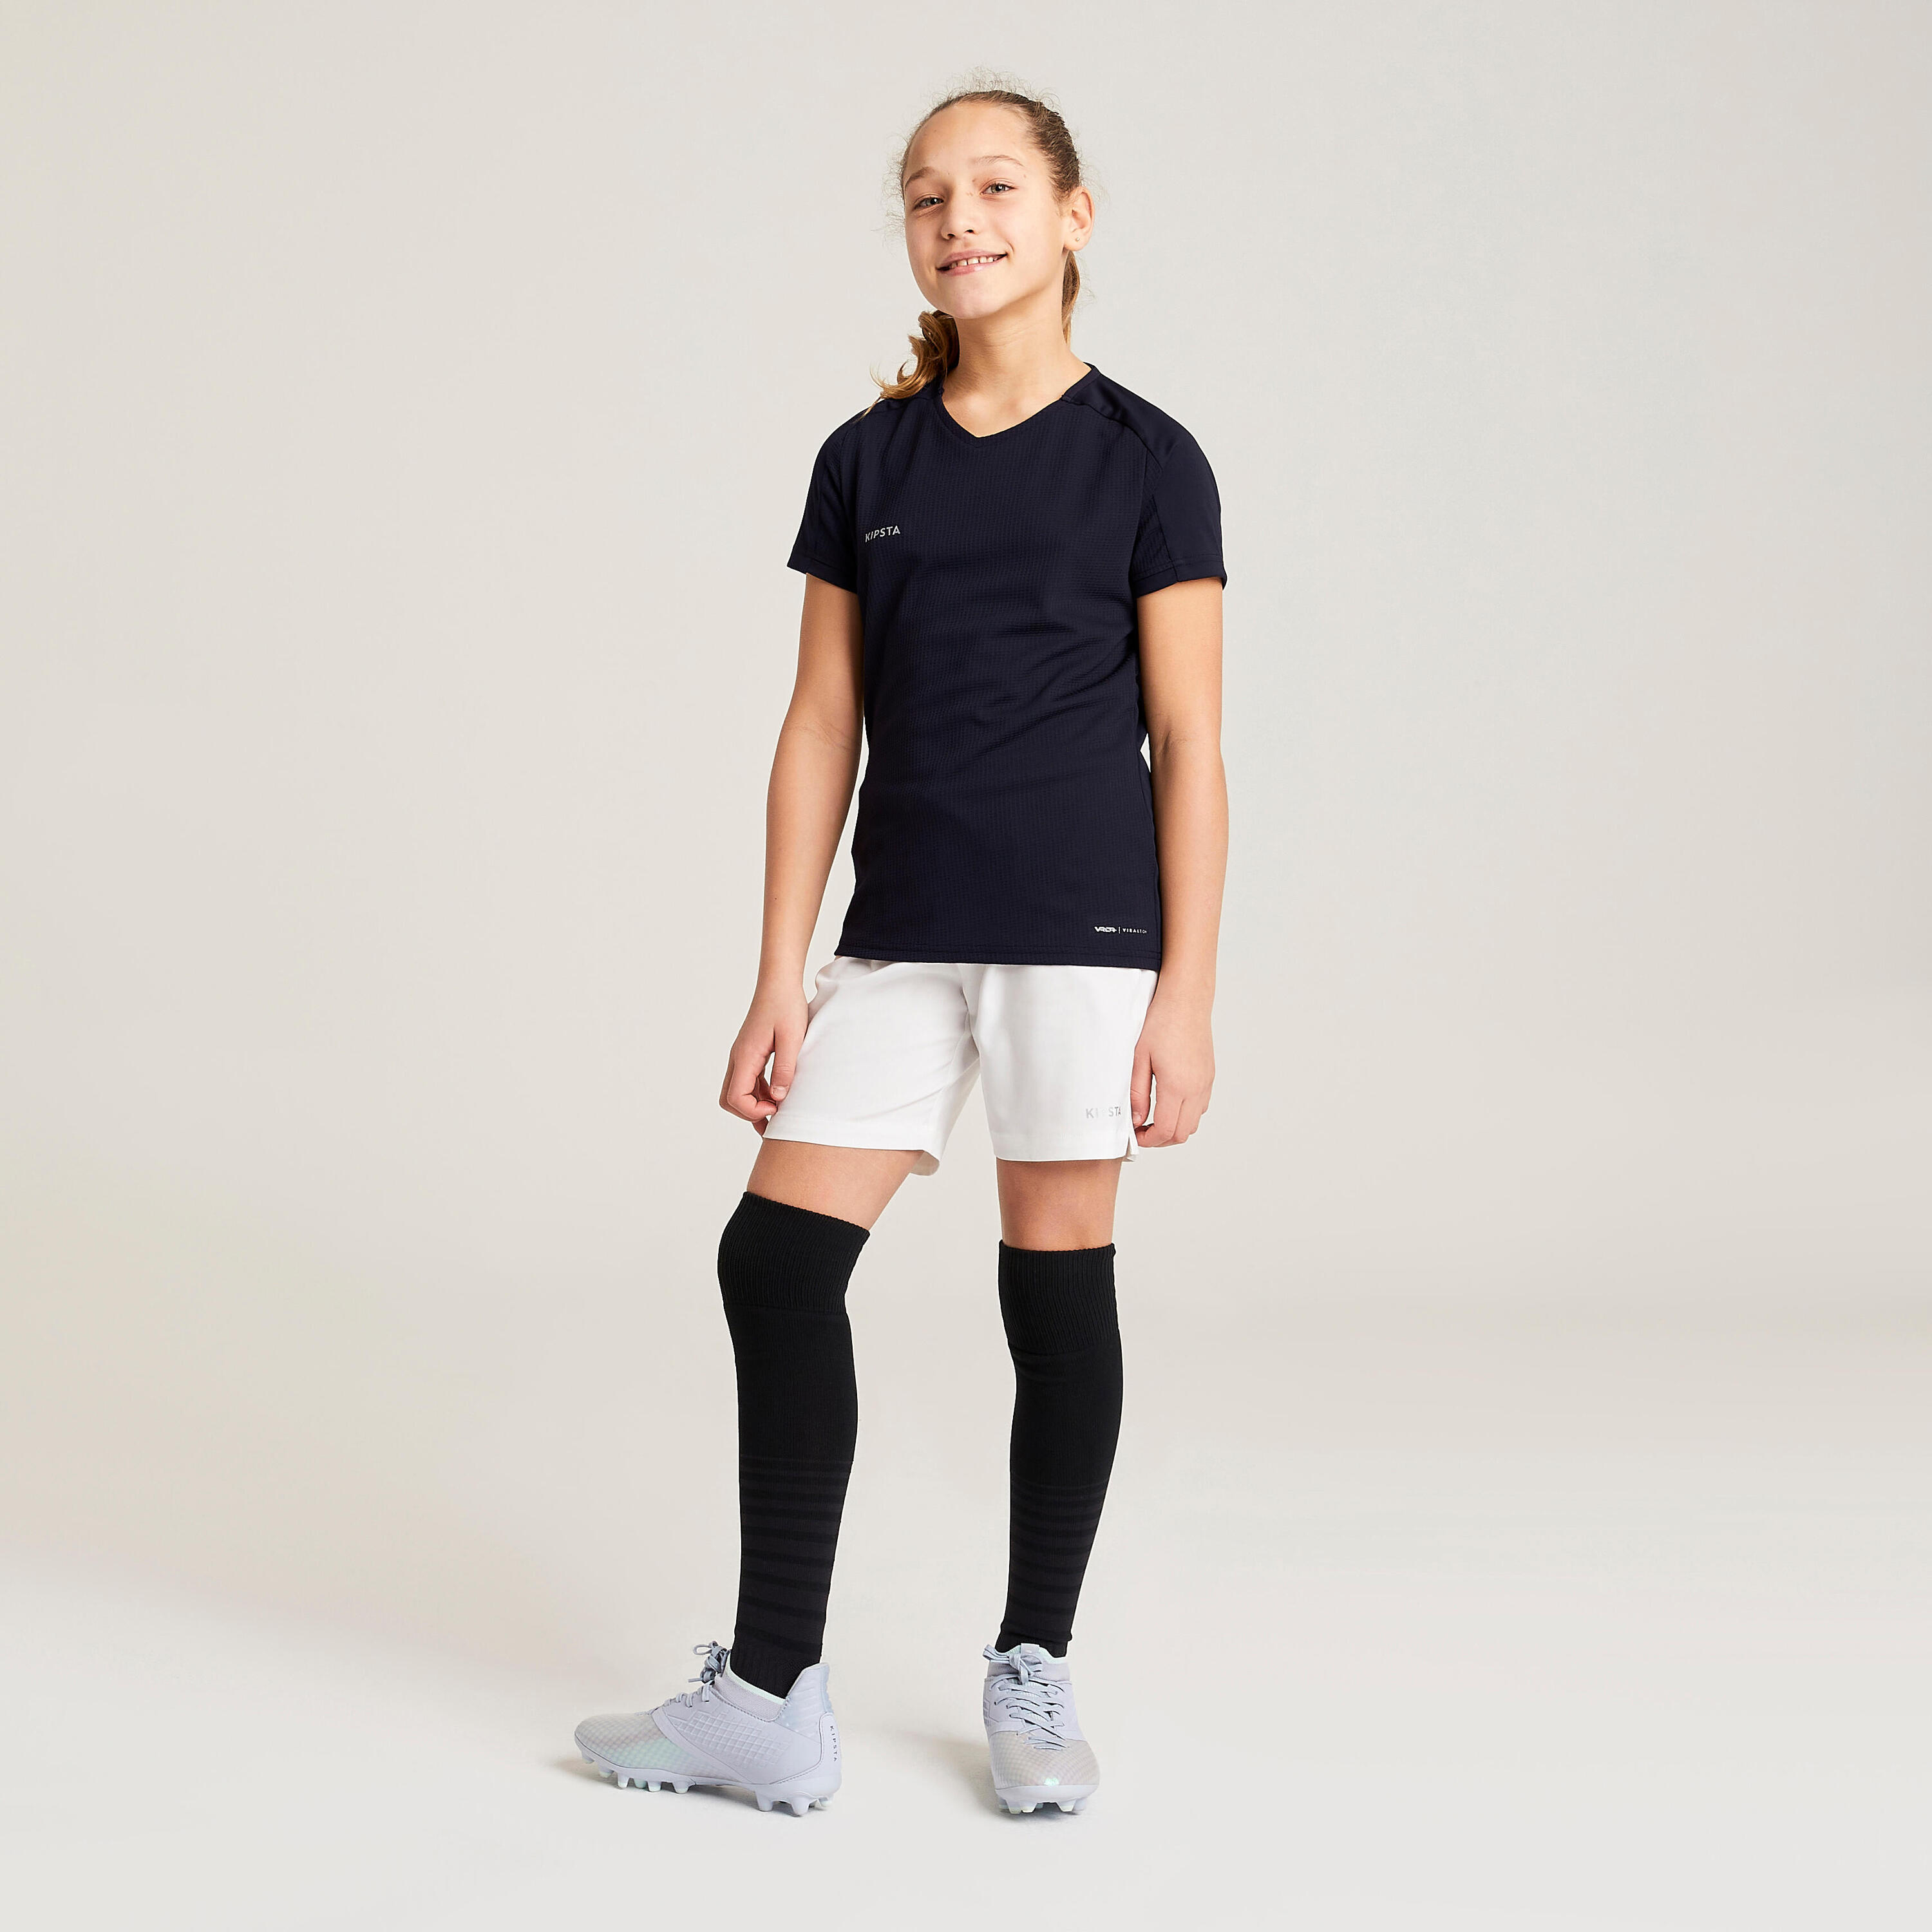 Girls' Football Shirt Viralto - Black 6/10